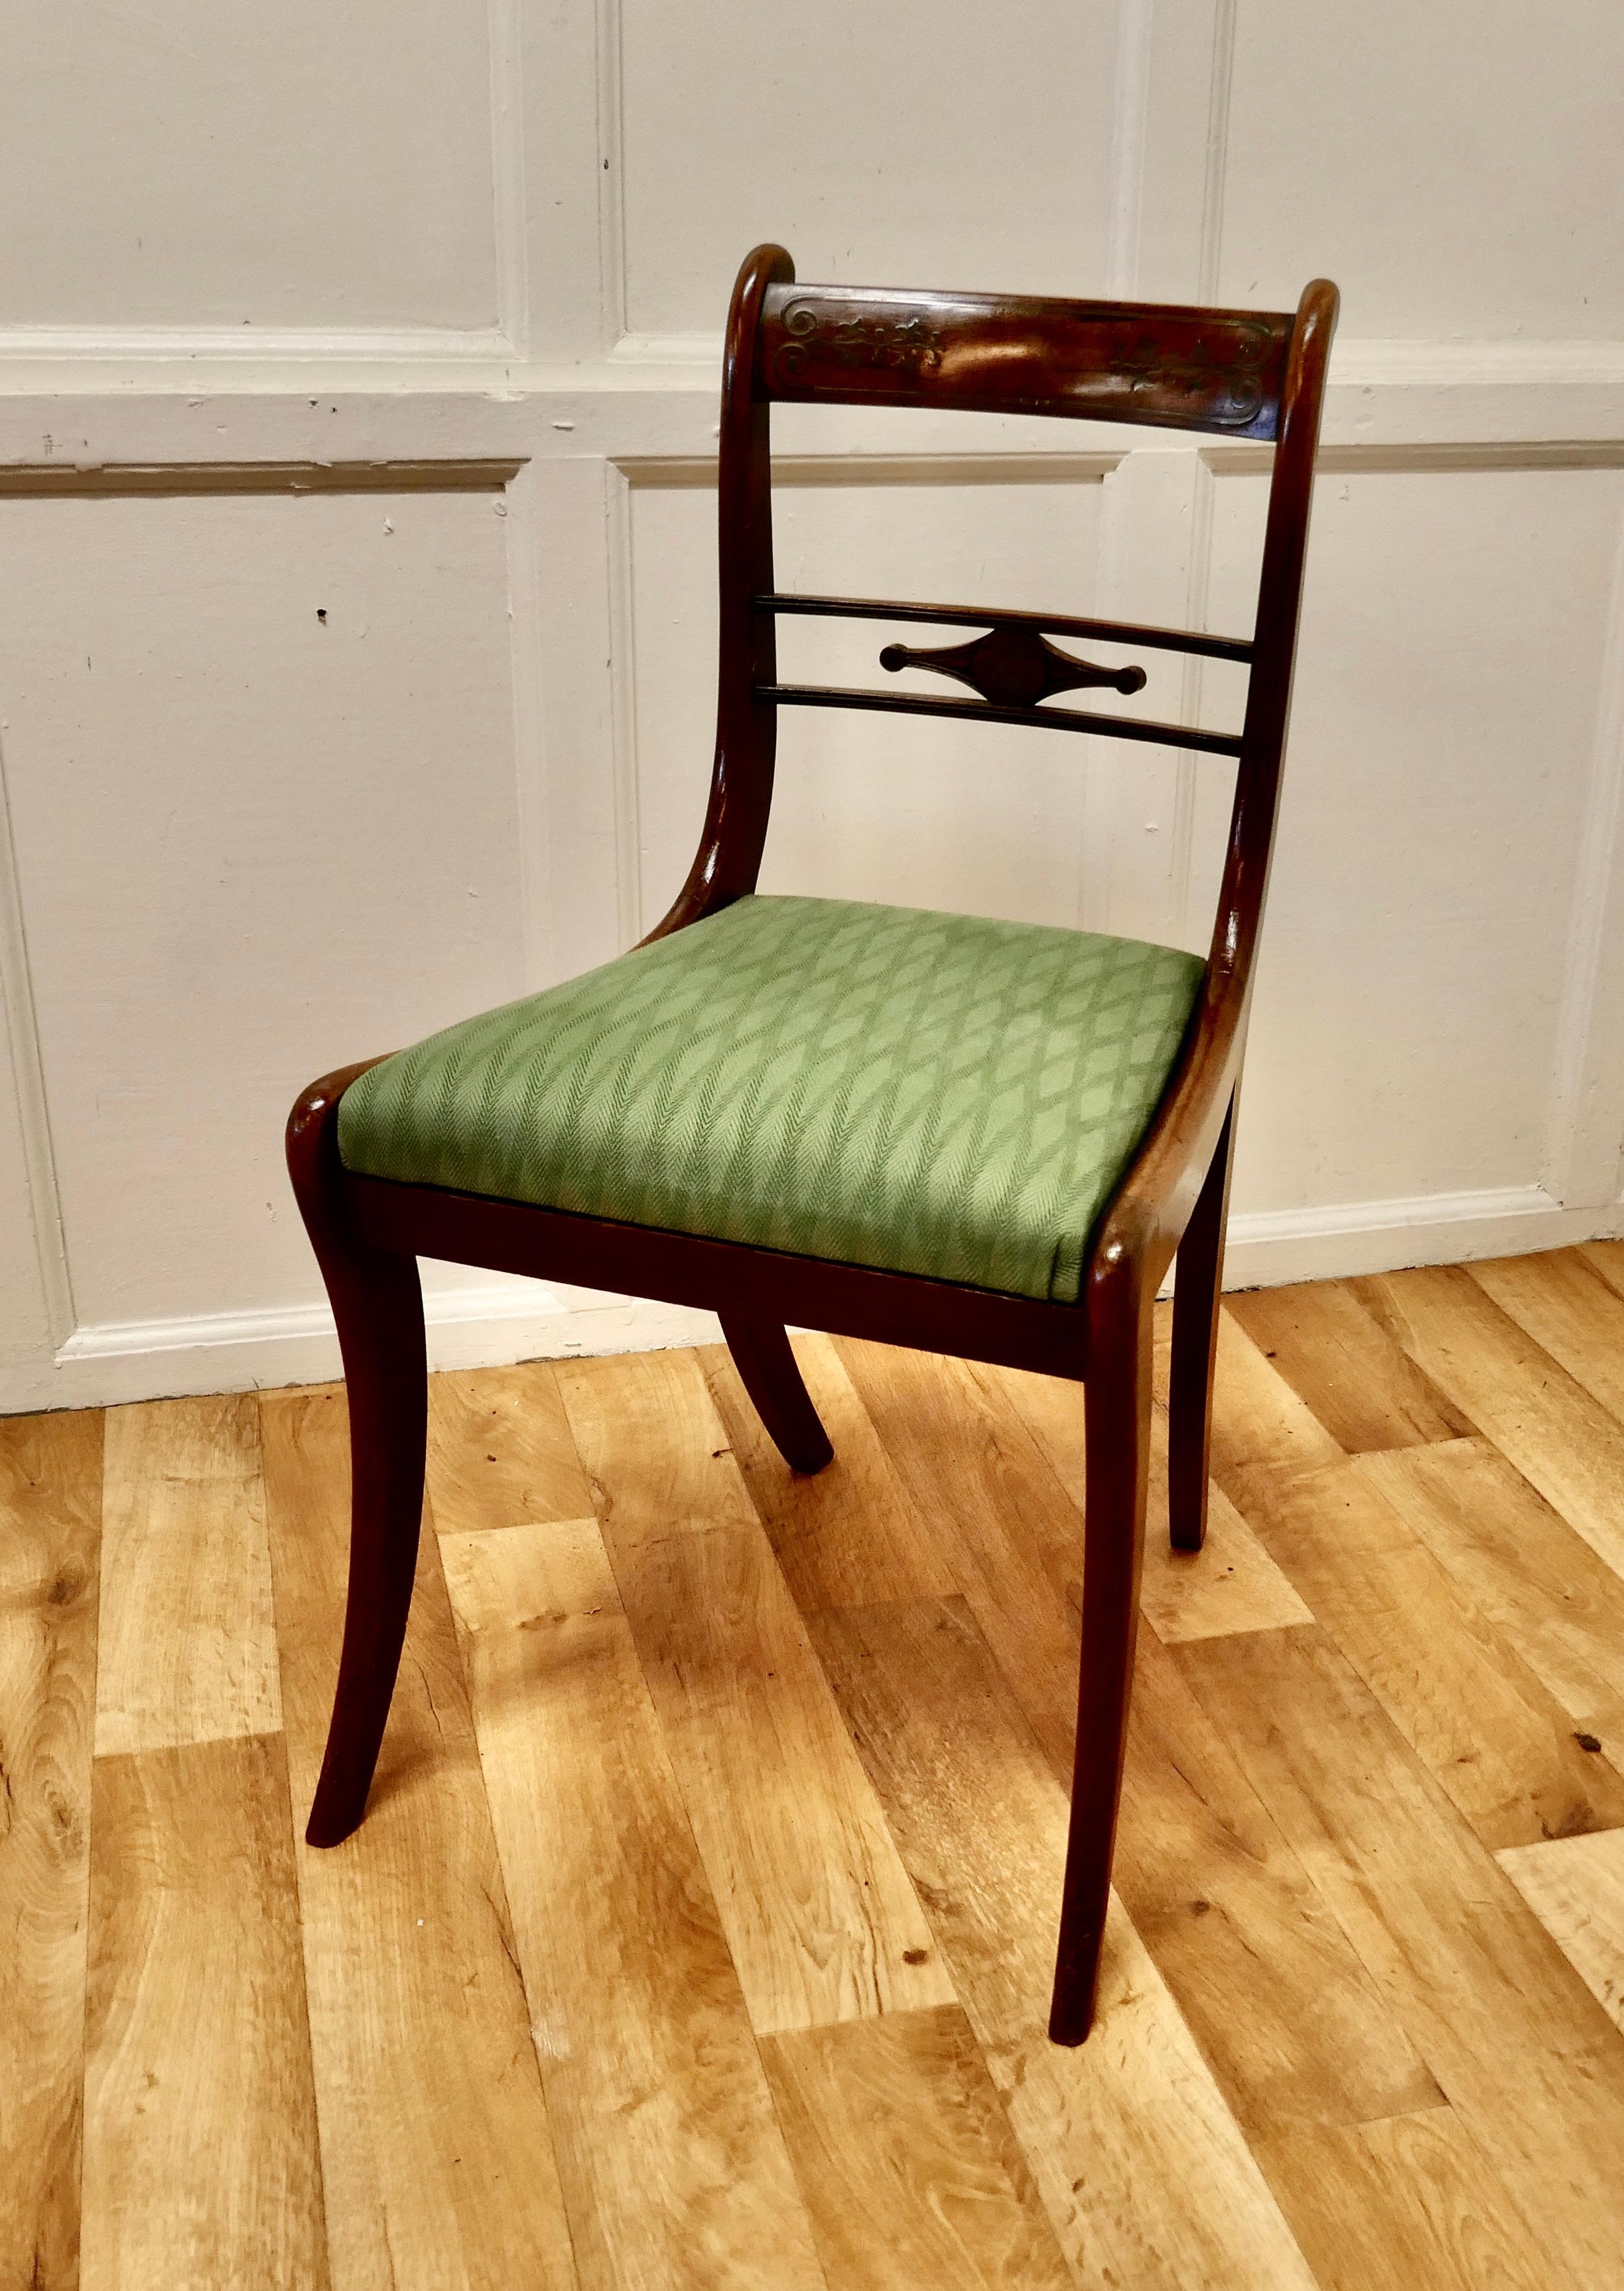 Regency-Schreibtischstuhl mit Messingintarsienverzierung
 
Ein sehr attraktiver Stuhl mit einer breiten Rückenlehne, die mit feinen Messingeinlagen verziert ist
Der Stuhl hat attraktive Säbelbeine und eine Trafalgar Sitz gepolstert in einem 2 Ton